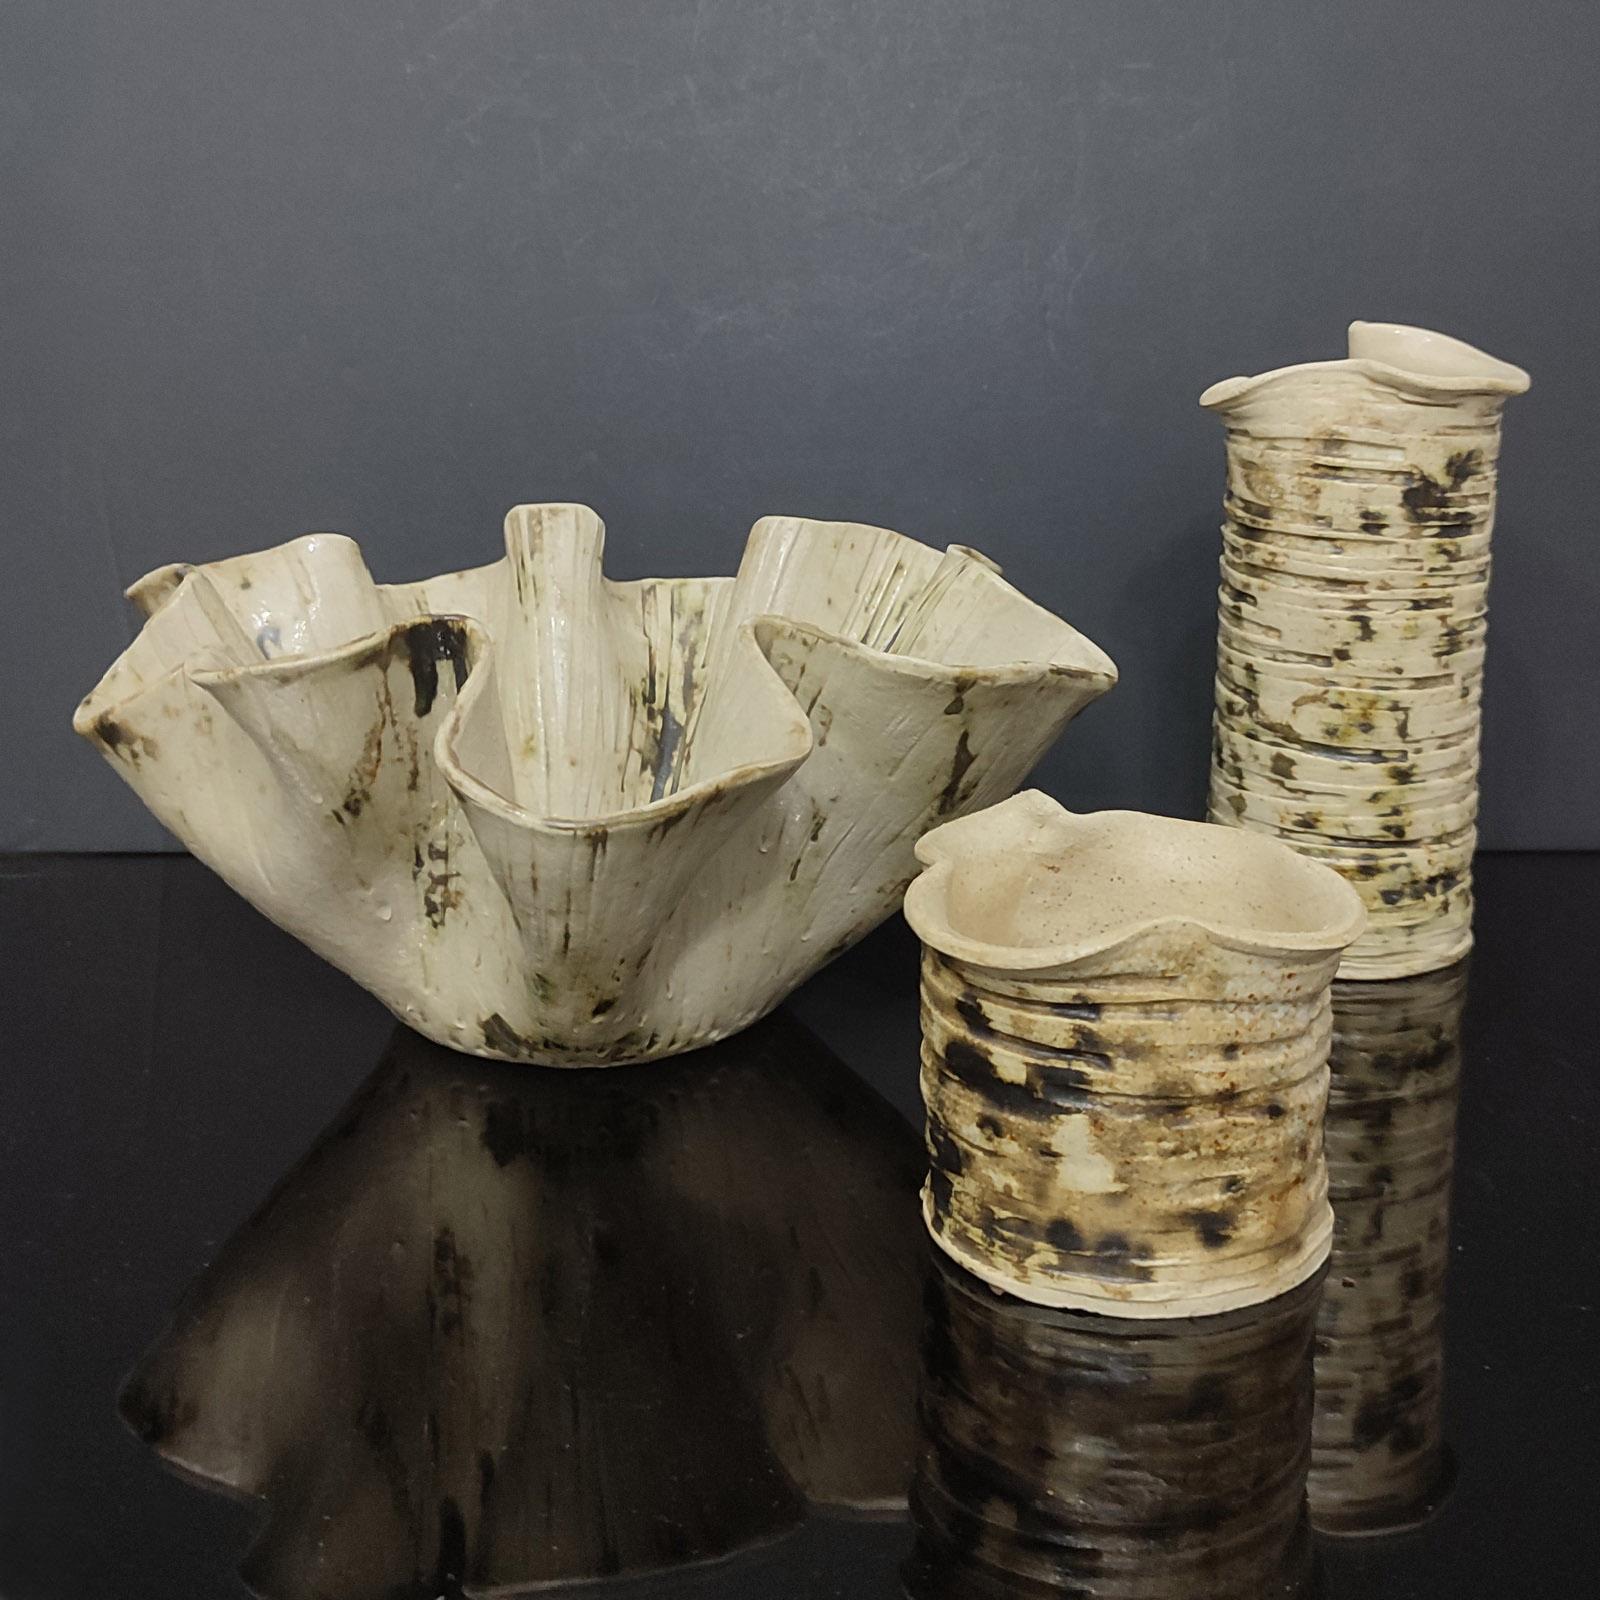 Mid-Century Studio Art Pottery Vasen, brutalistischer Stil, gekräuselte Ränder, glasiert.
Schönes organisches Aussehen, Steingutfarben,  mit hellen salbeigrünen Akzenten wird dieses Vasen-Set Ihr Zuhause auf moderne Weise dekorieren.
Jeder Artikel